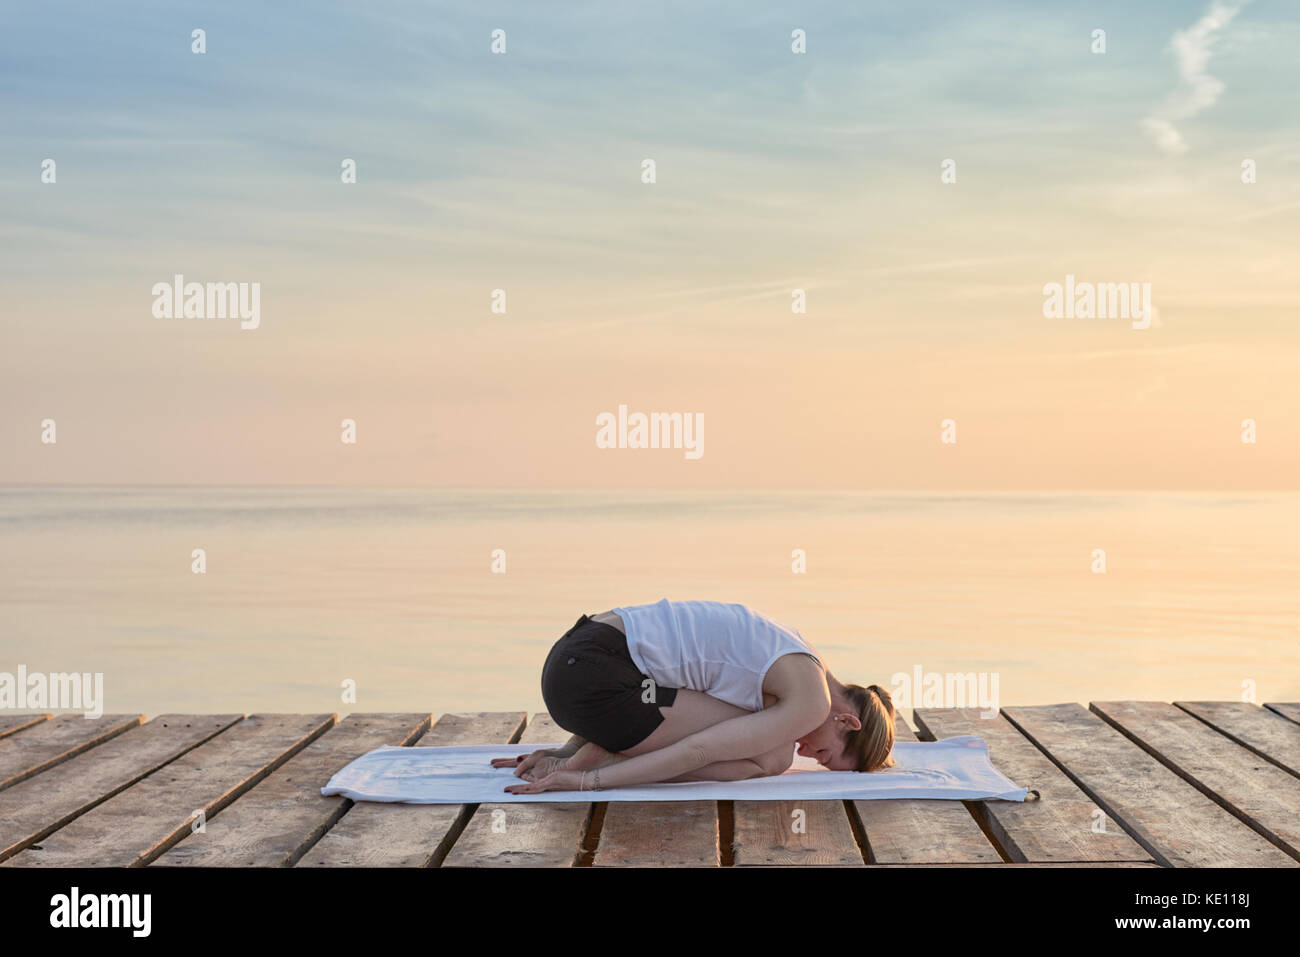 Vue arrière du jeune femme était assise sur la pratique du yoga serviette par mer au coucher du soleil Banque D'Images